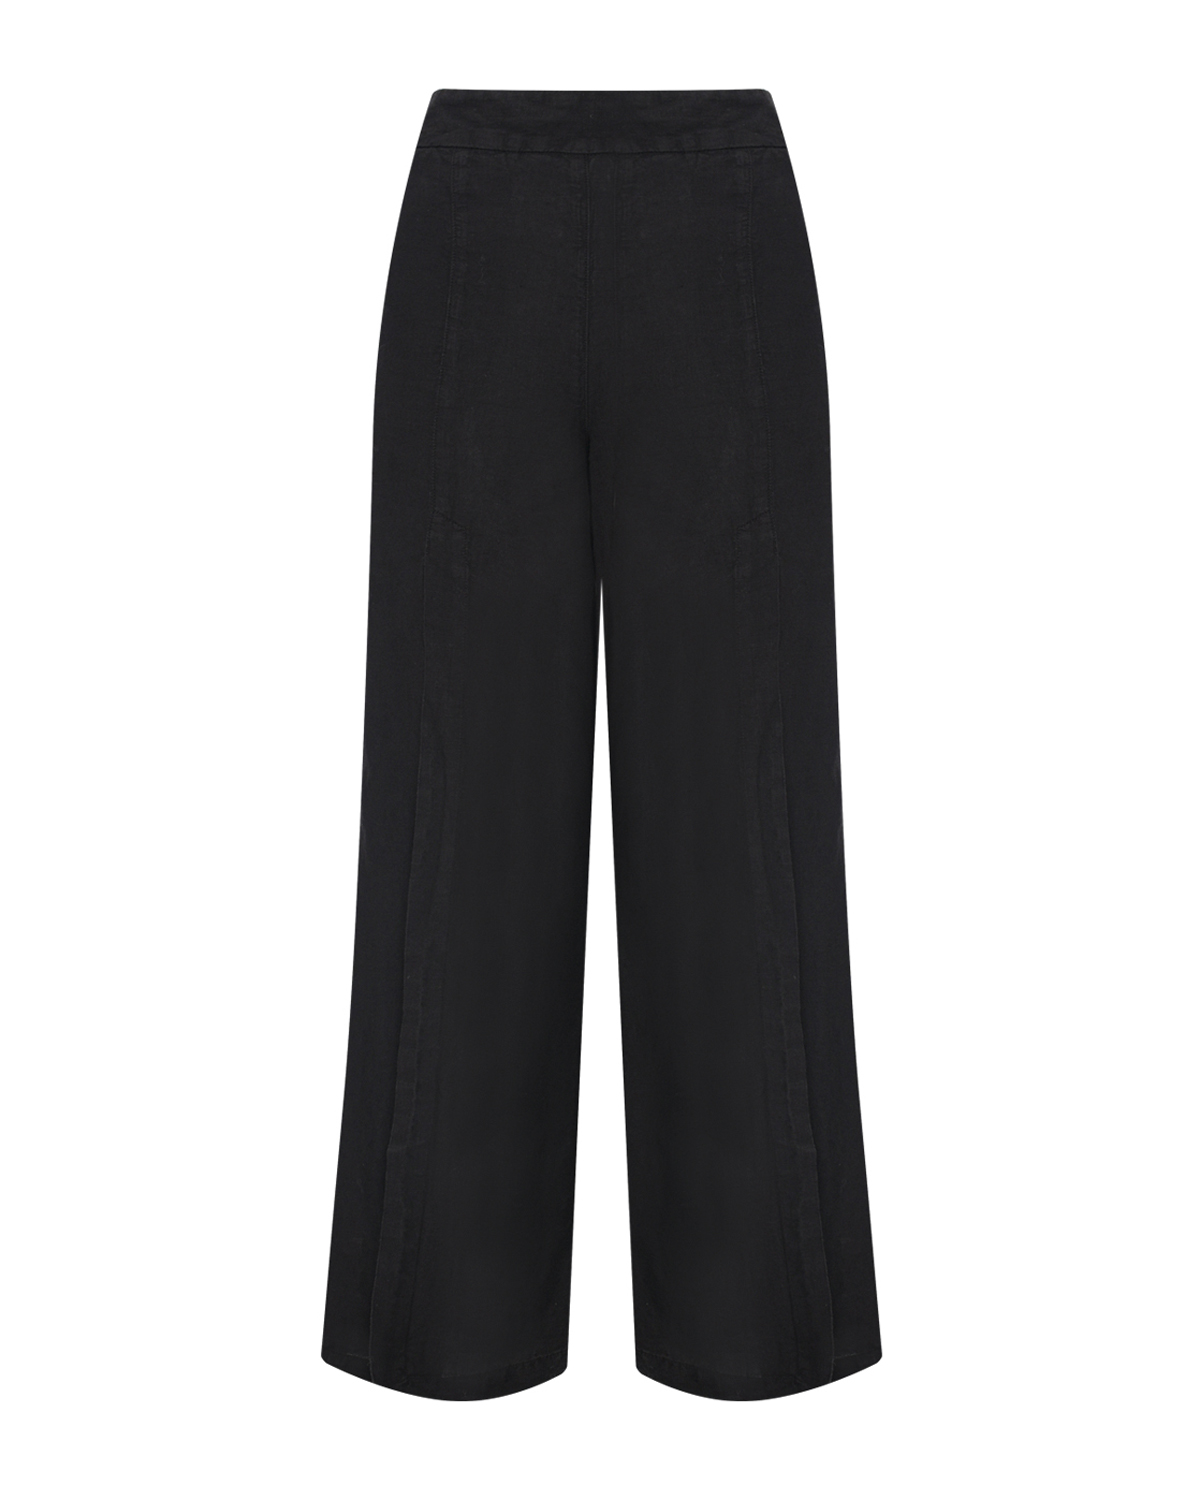 Черные брюки с накладными карманами 120% Lino, размер 42, цвет черный - фото 1